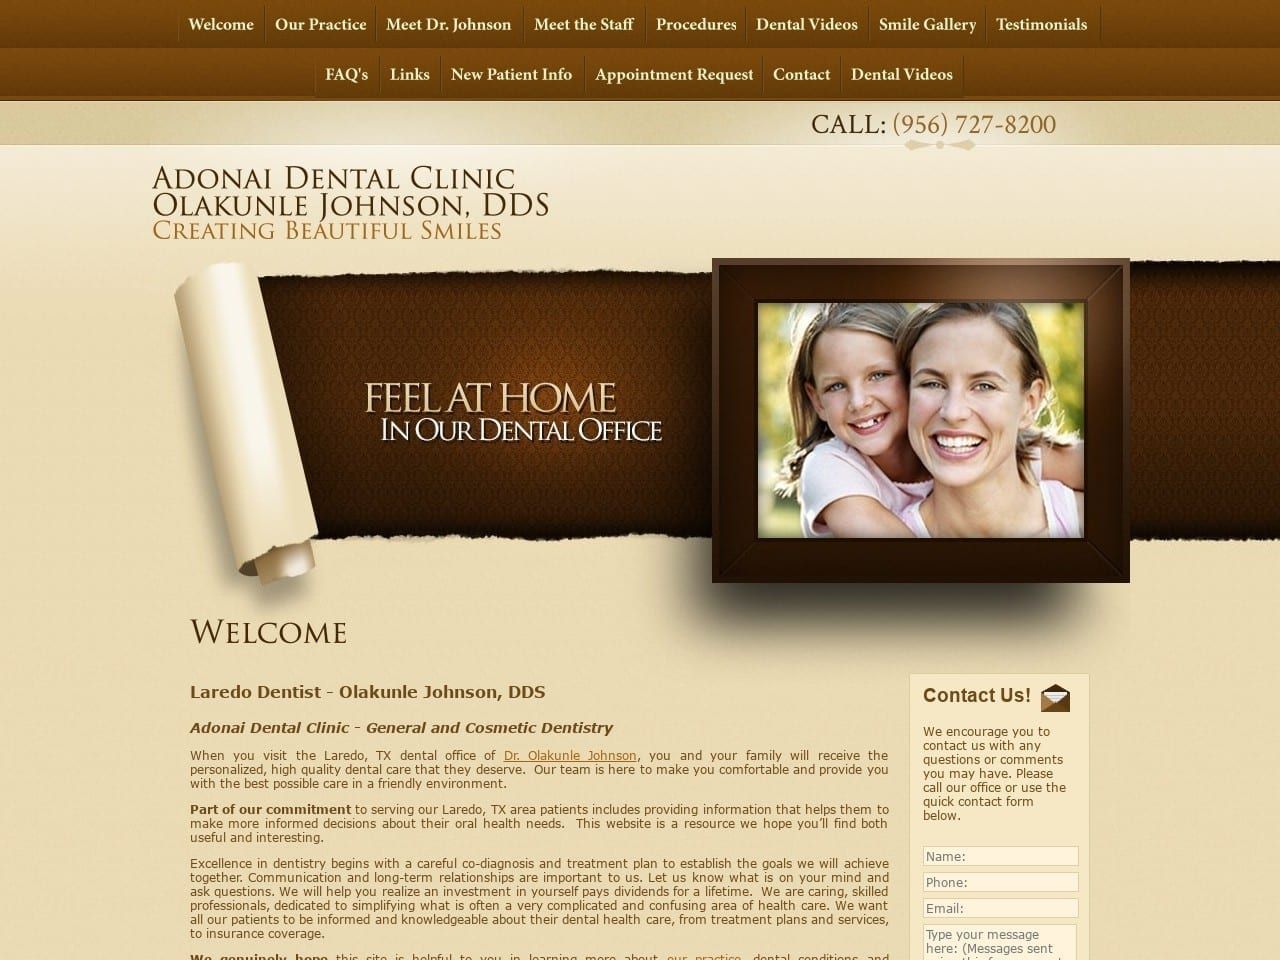 Adonai Dental  Clinic Website Screenshot from adonaidentalclinic.com